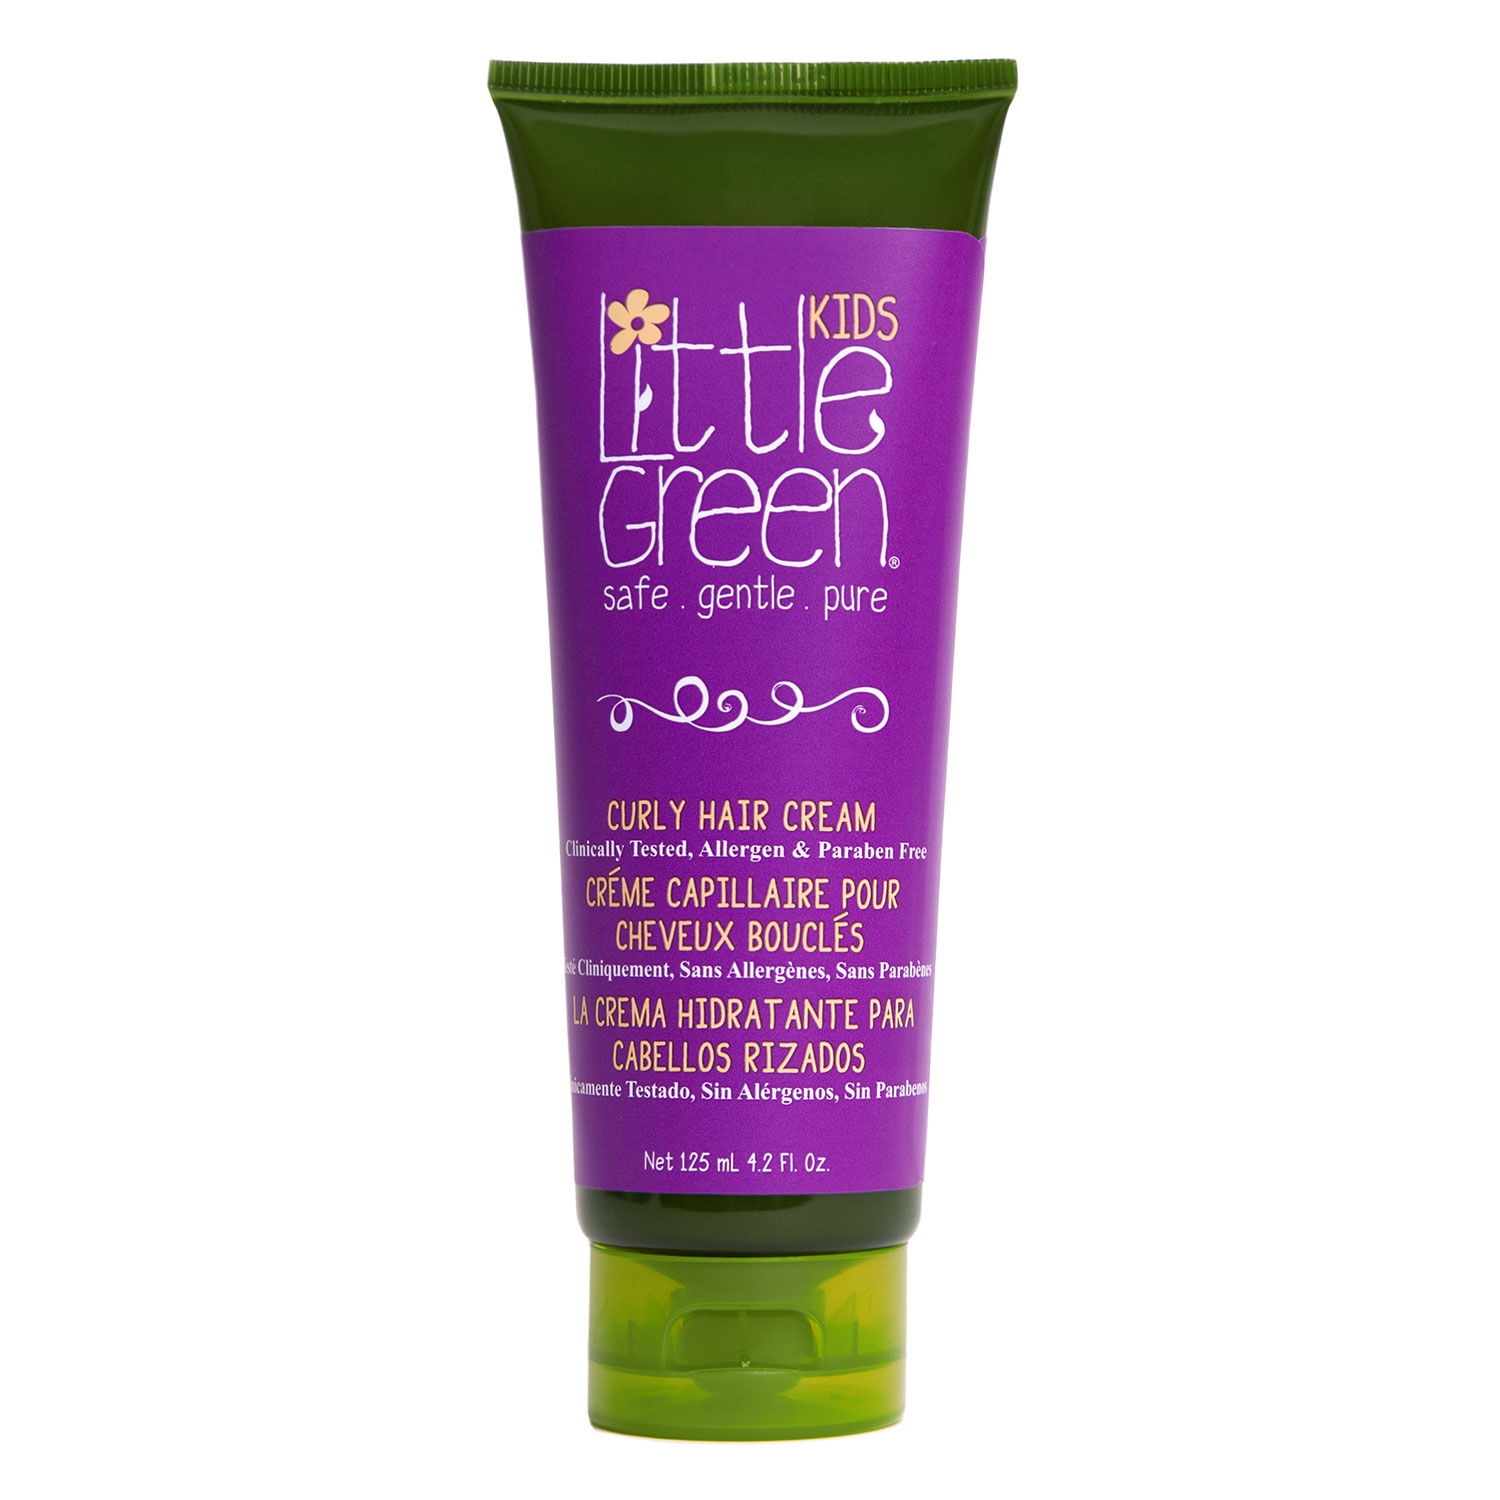 Produktbild von Little Green Kids - Curly Hair Cream